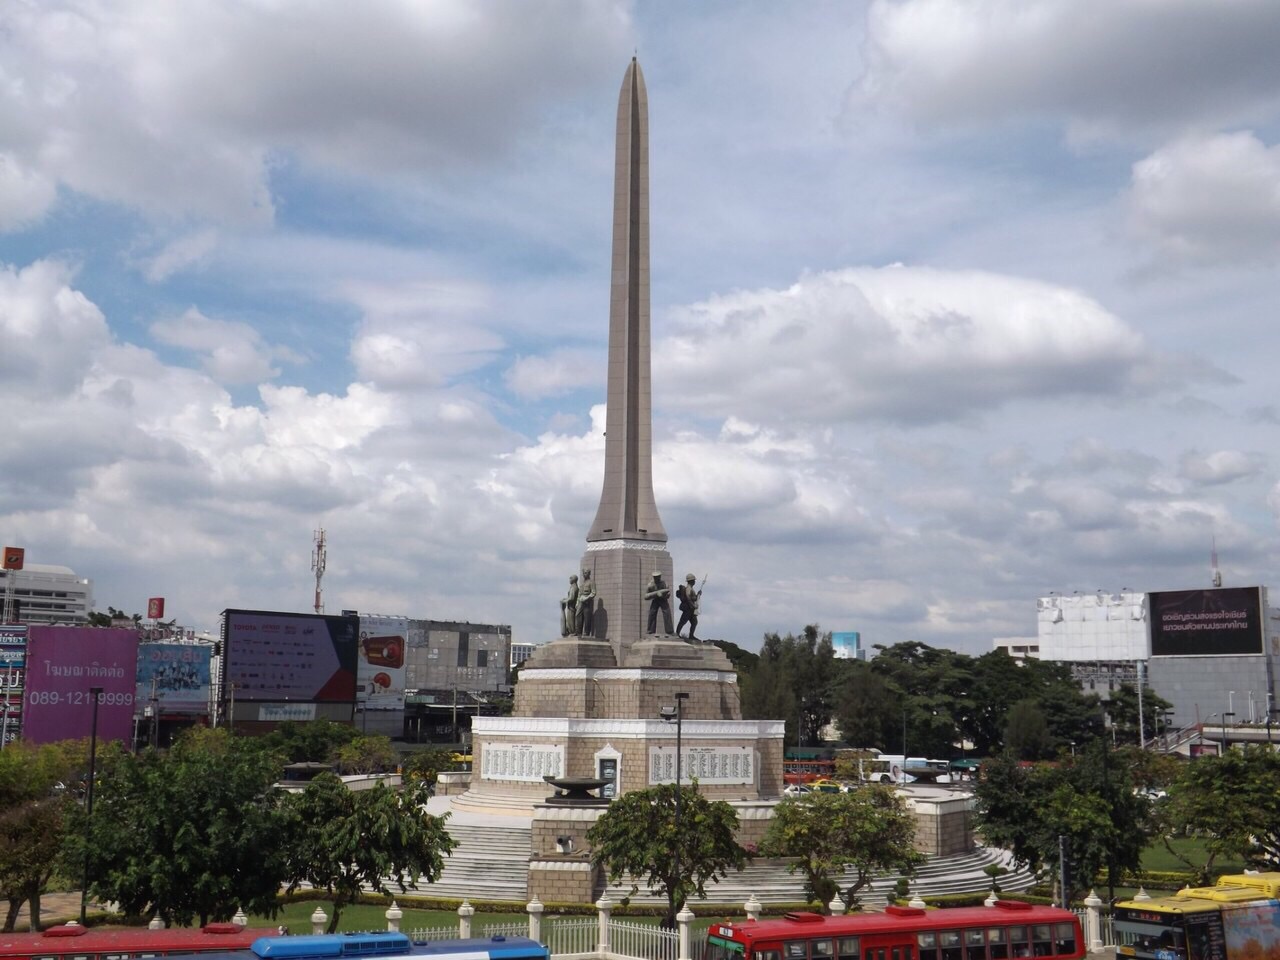 【携程攻略】曼谷胜利纪念碑景点,看了攻略交通很方便